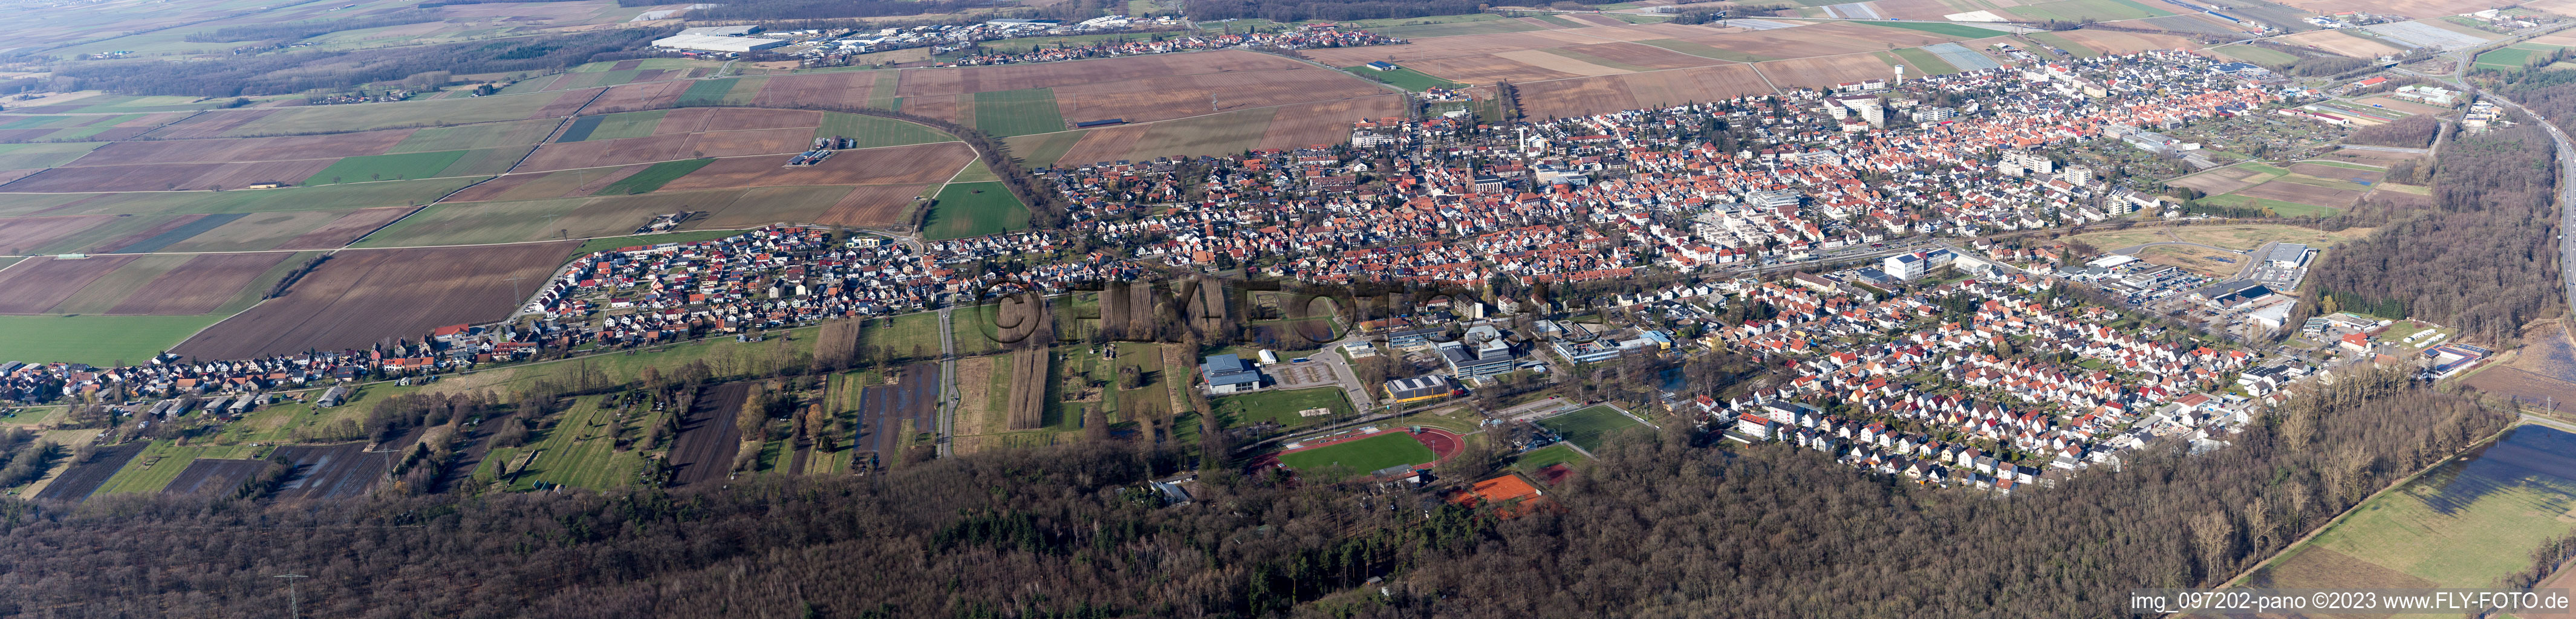 Vue aérienne de Panorama à Kandel dans le département Rhénanie-Palatinat, Allemagne